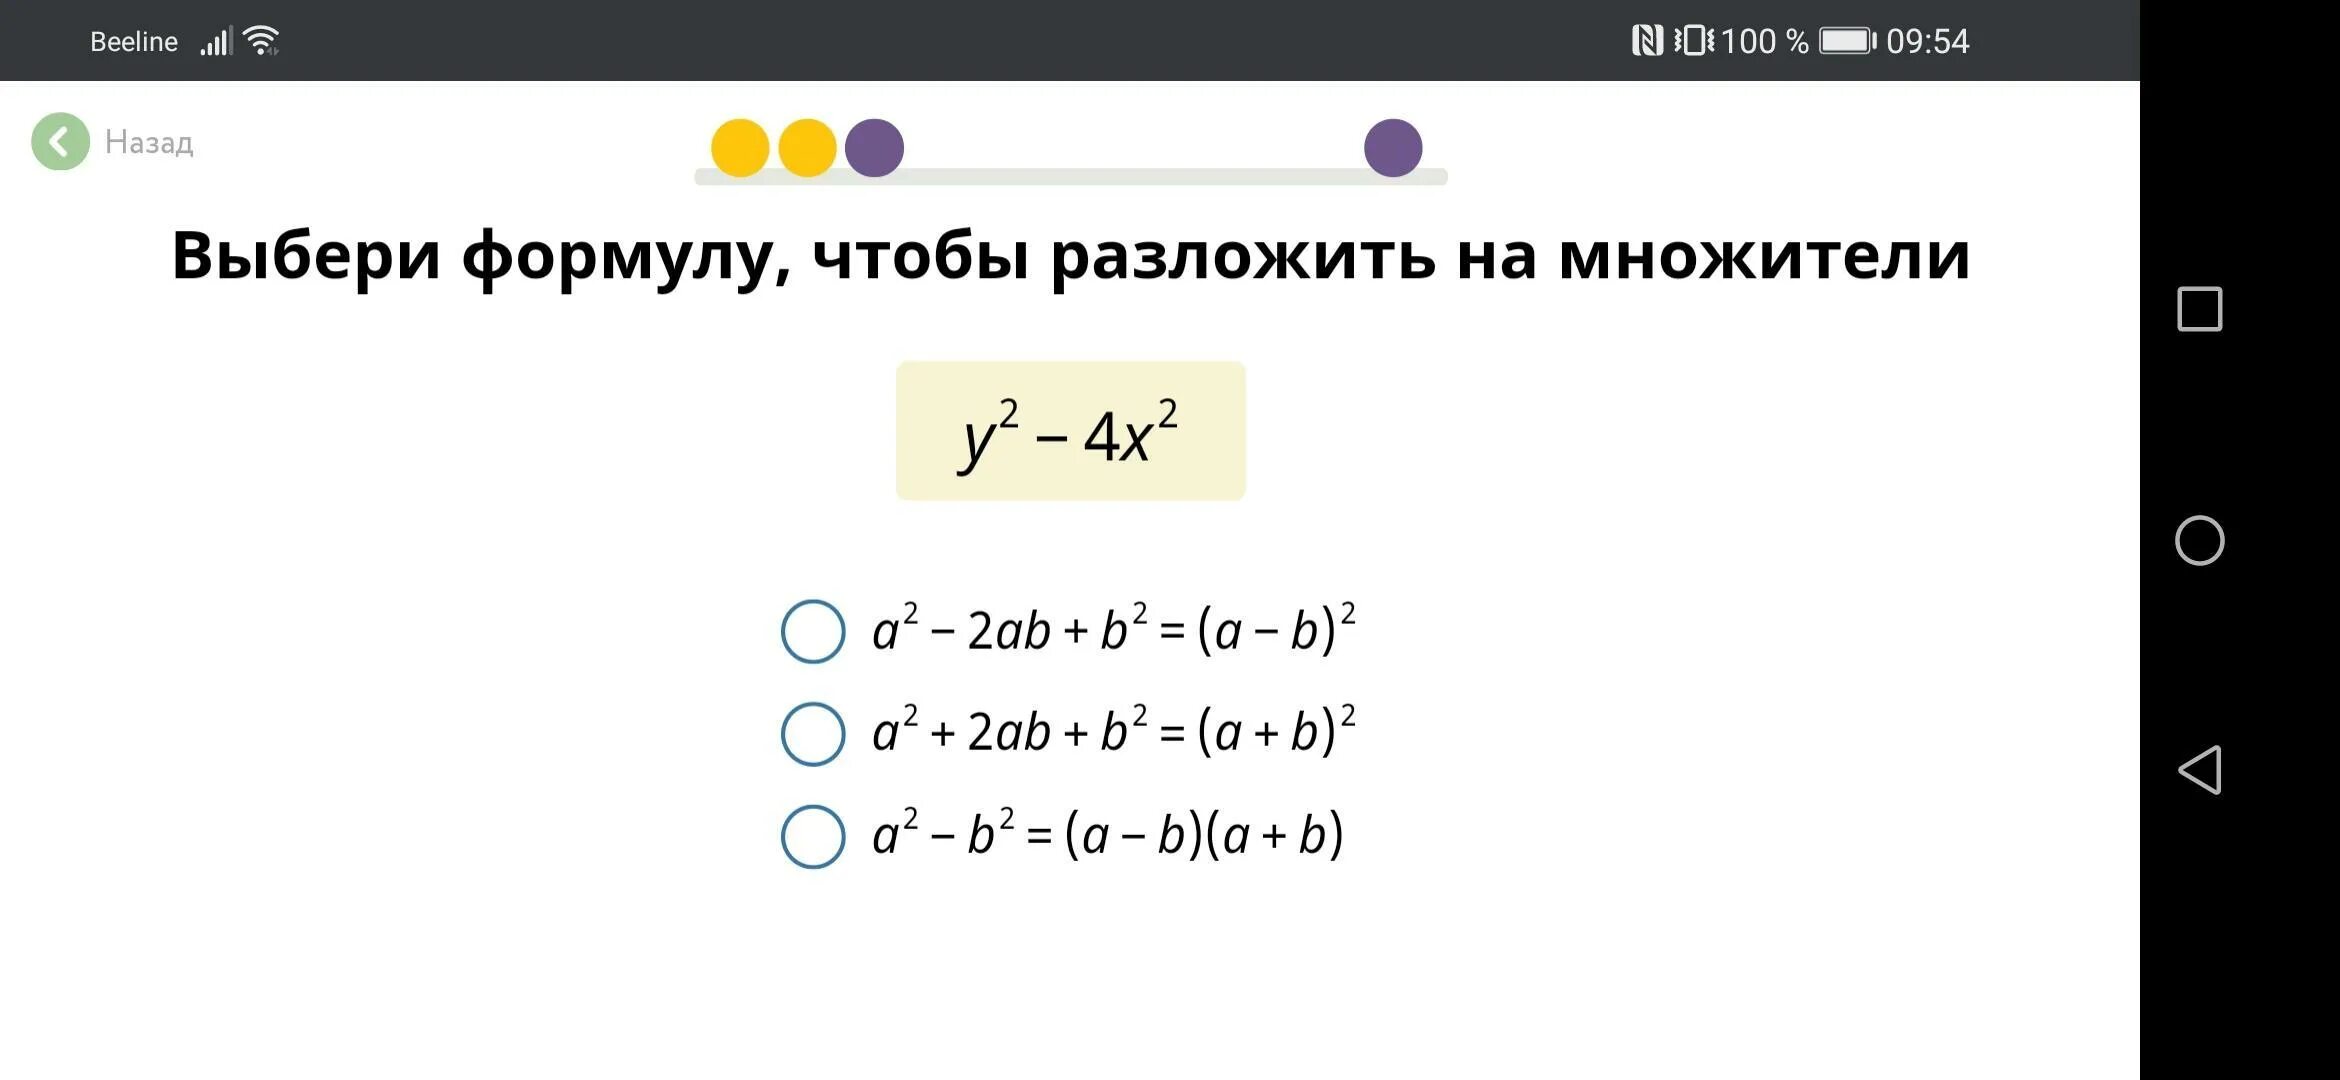 Разложить на множители 4 b 2. Выбери формулу чтобы разложить на множители. Выбери формулу чтобы разложить на множители 2x^2-2. Учи.ру разложение на множители. Выбери формулу чтобы разложить на множители учи ру.